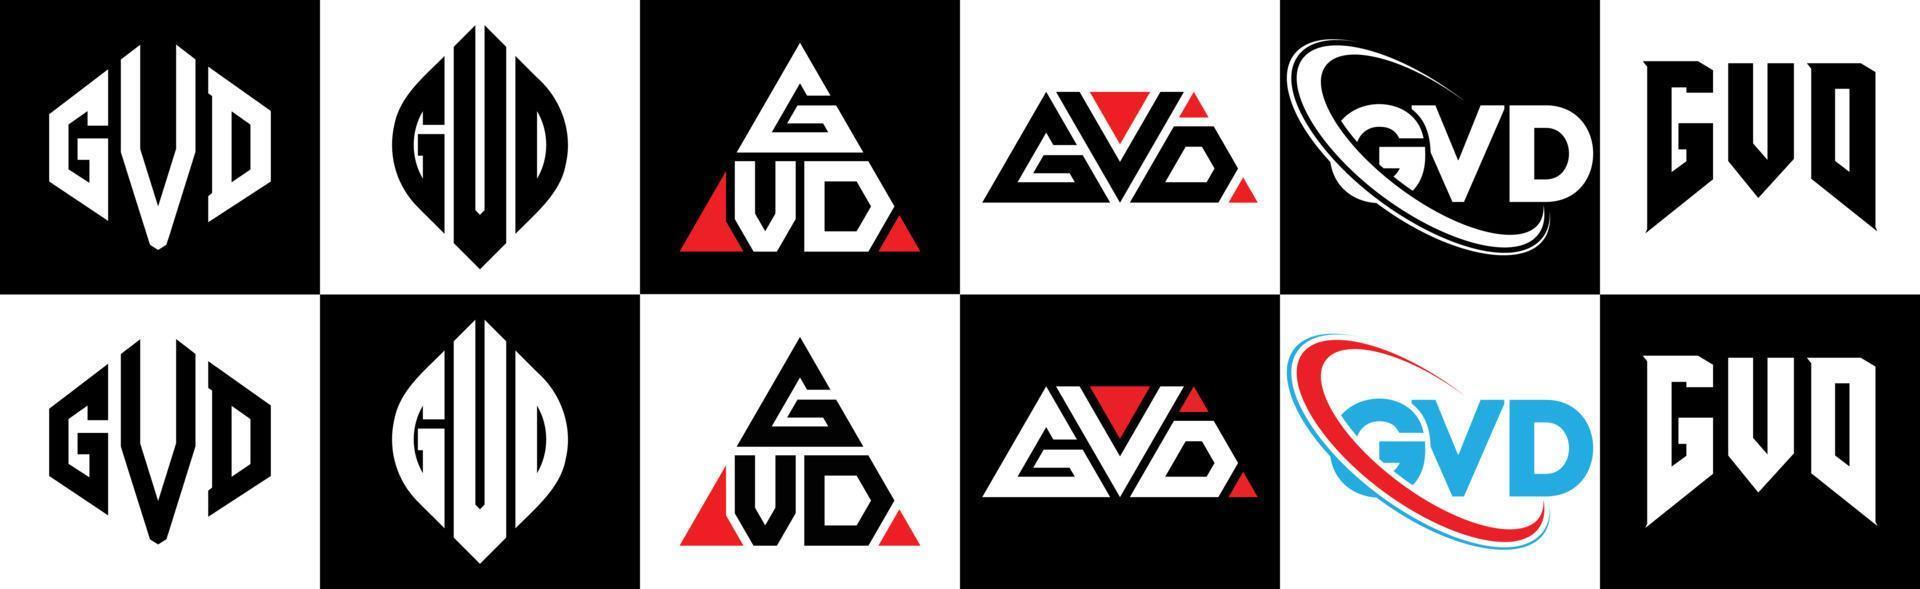 création de logo de lettre gvd en six styles. gvd polygone, cercle, triangle, hexagone, style plat et simple avec logo de lettre de variation de couleur noir et blanc dans un plan de travail. logo gvd minimaliste et classique vecteur